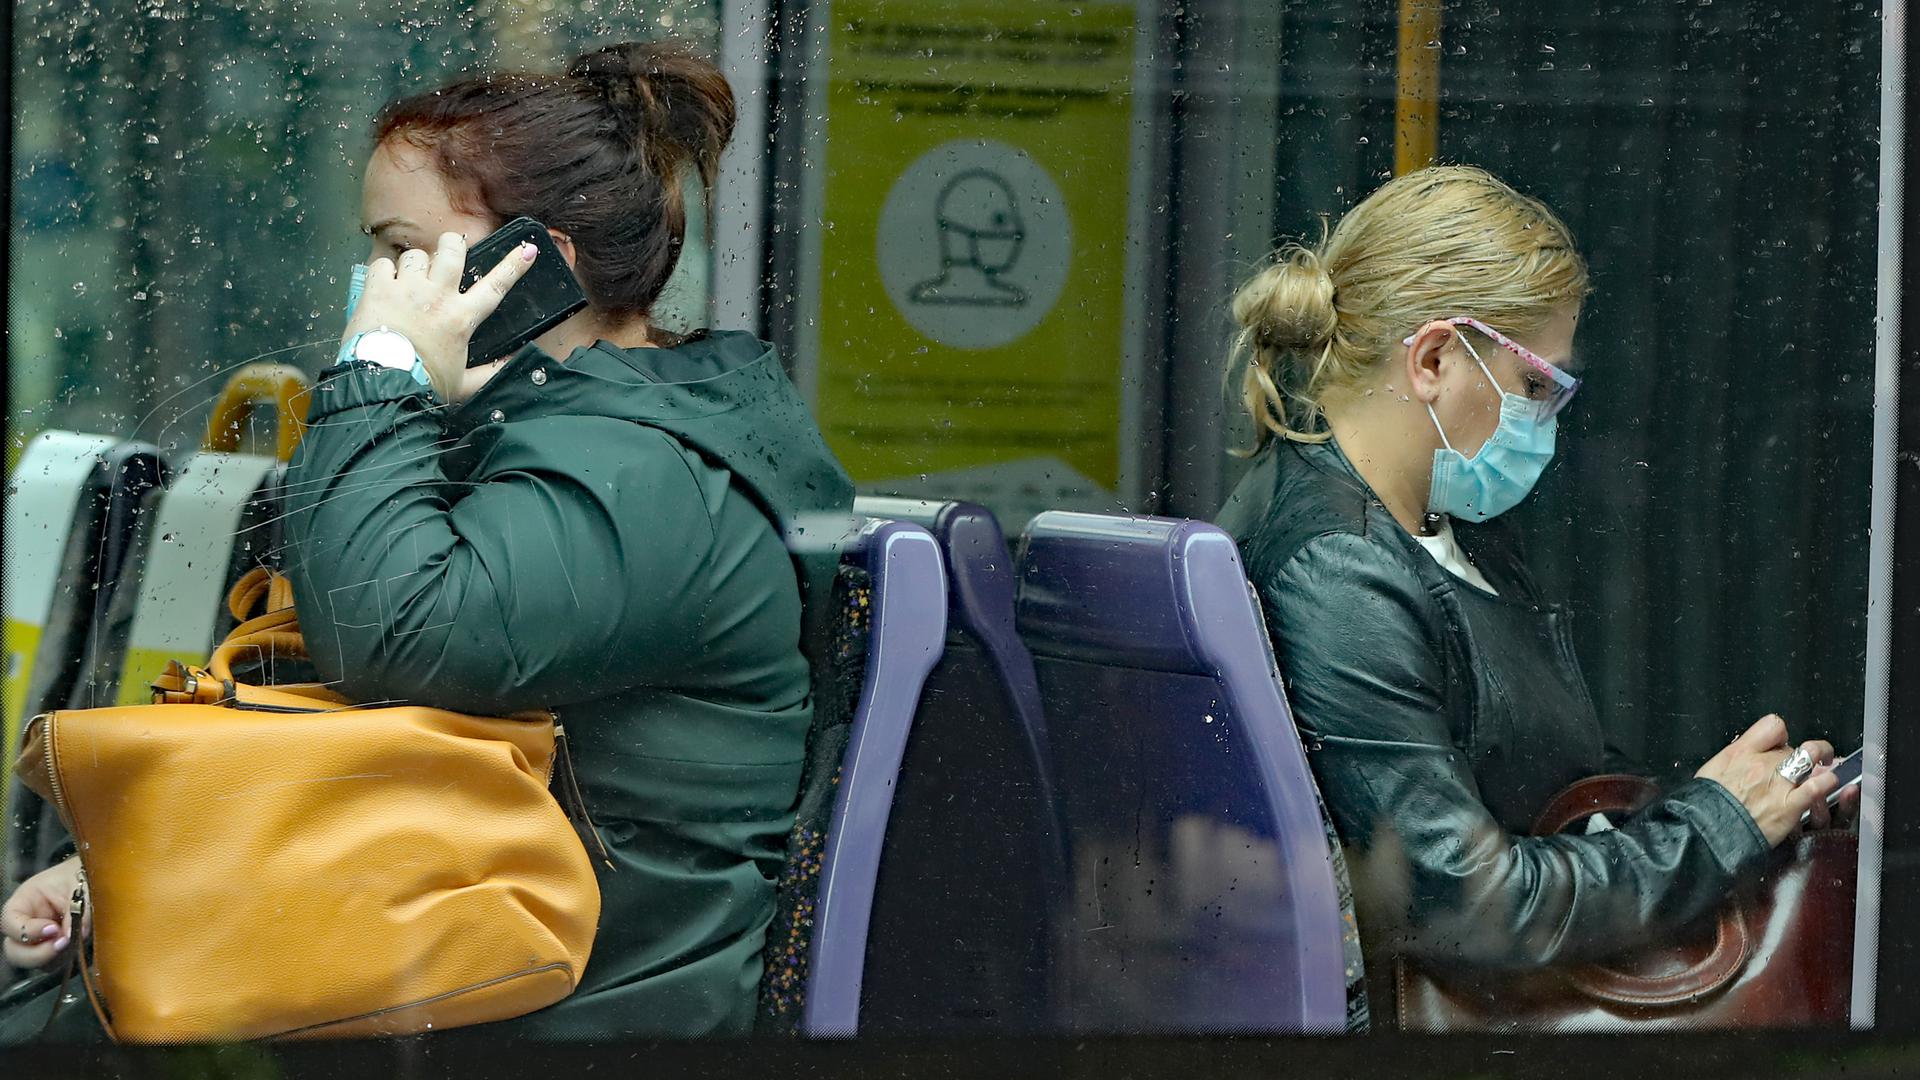 Menschen tragen Schutzmasken einer Straßenbahn, nachdem das Tragen von Mundschutz in öffentlichen Verkehrsmitteln landesweit zur Pflicht gemacht wurde. 